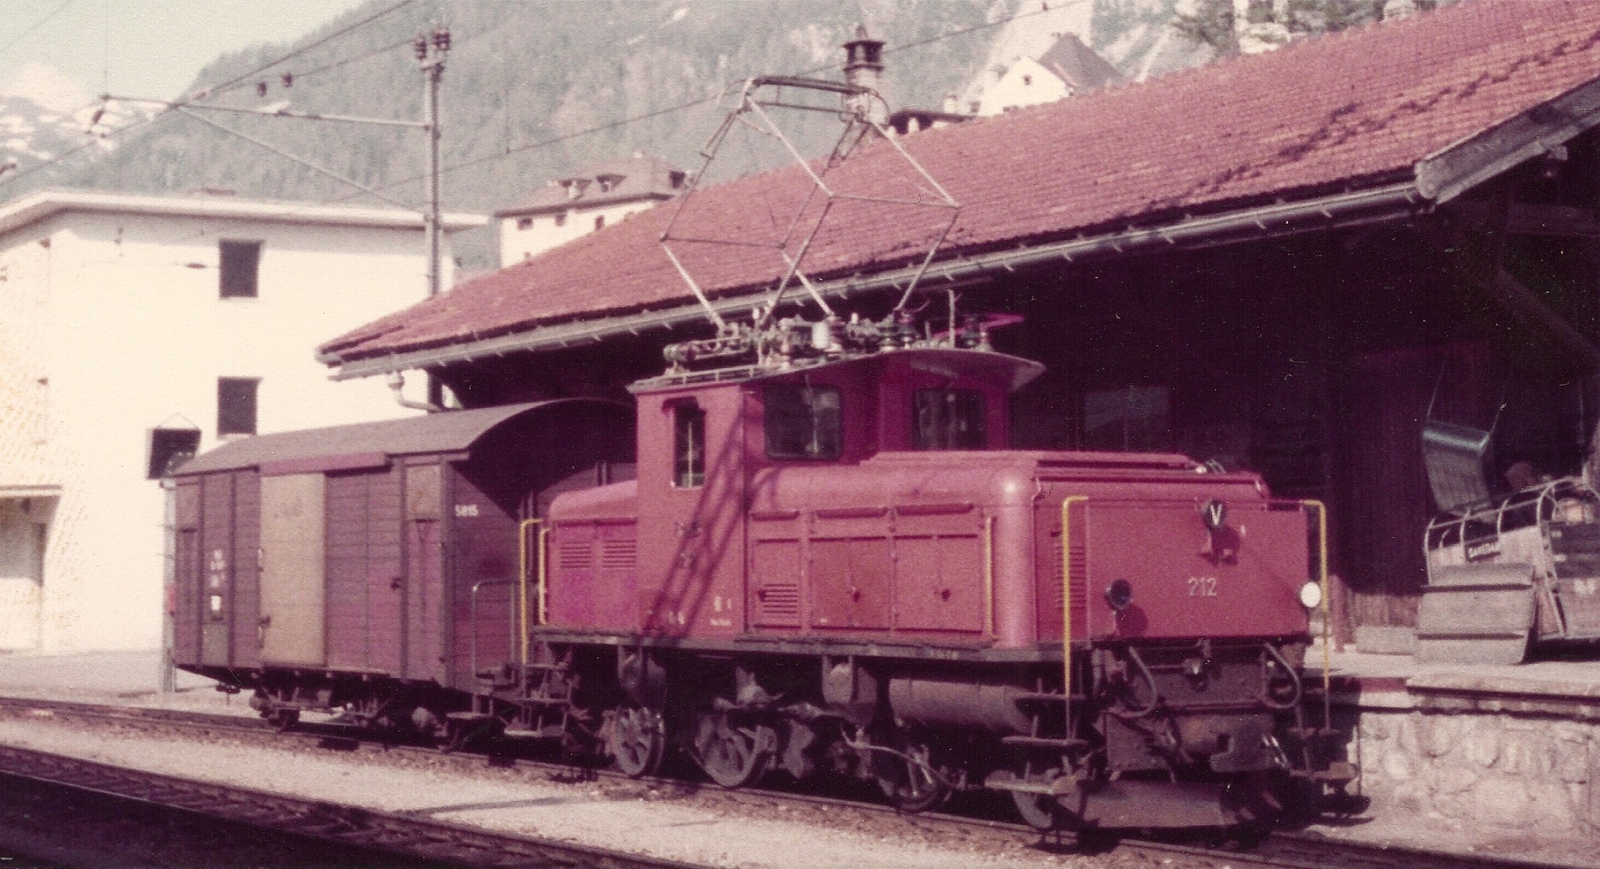 Rebuilt Ge 2/4 No. 212 in June 1982 at Samedan